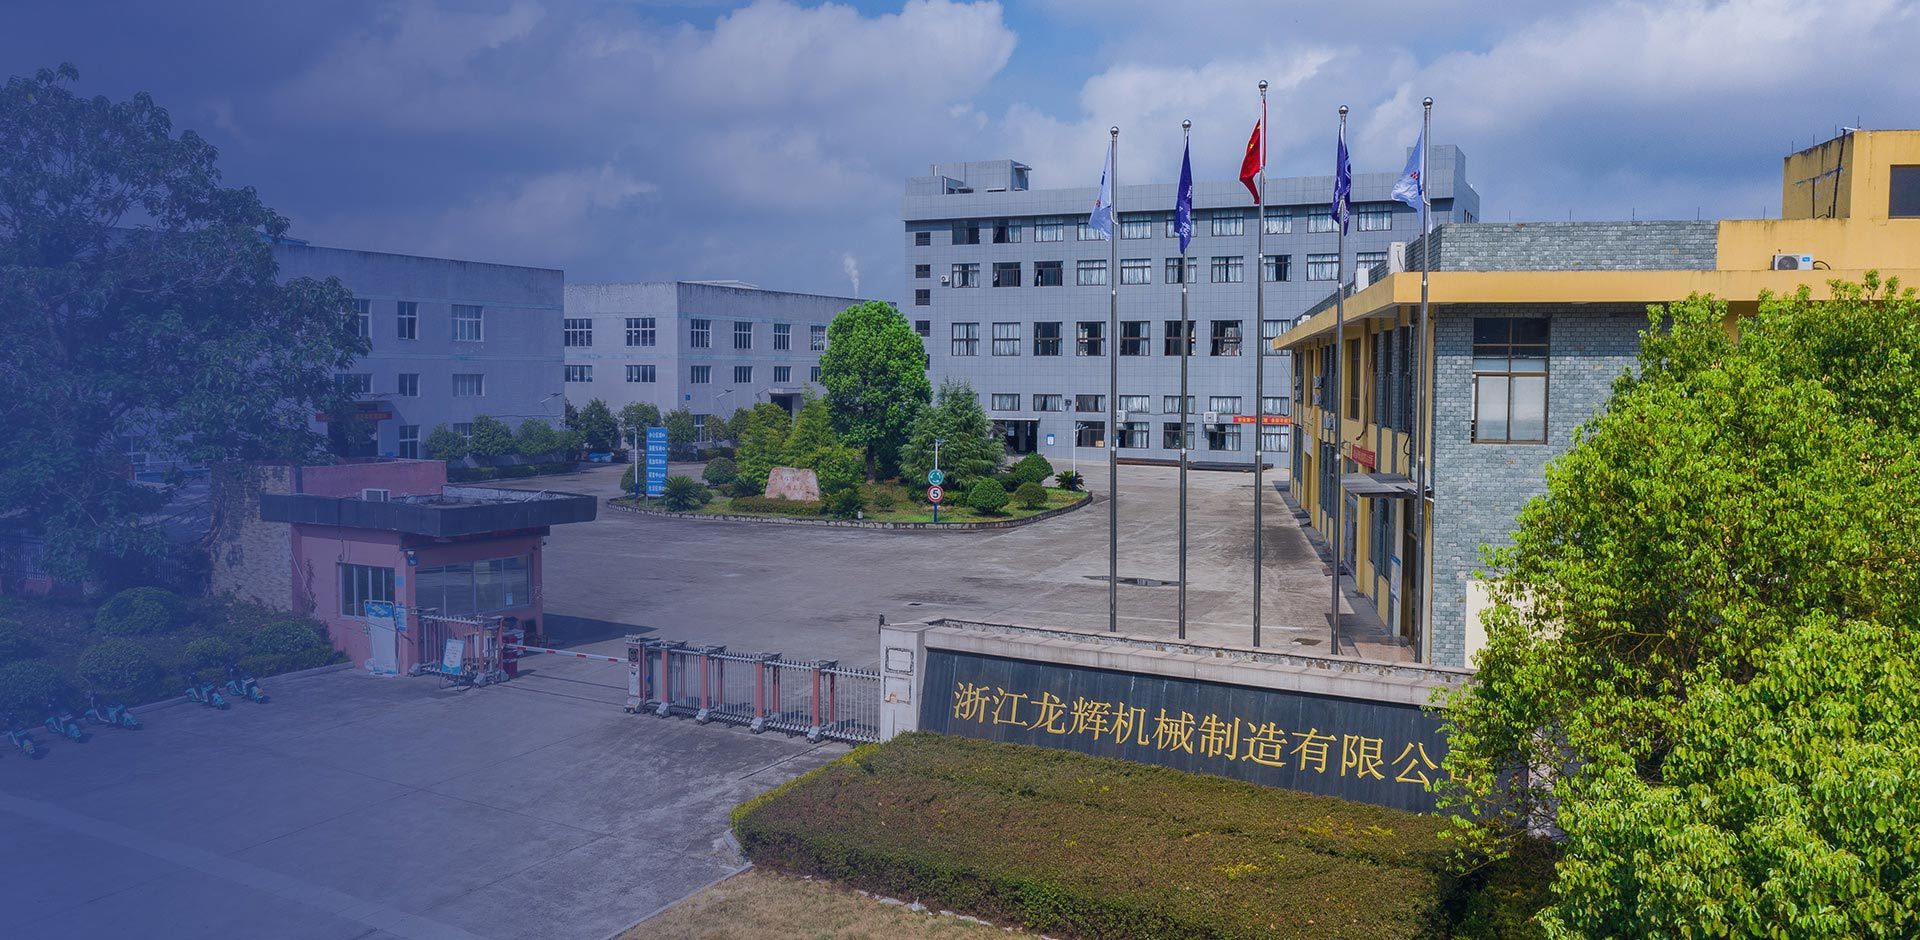 Zhejiang Longhui Machinery Manufacturing Co., Ltd.